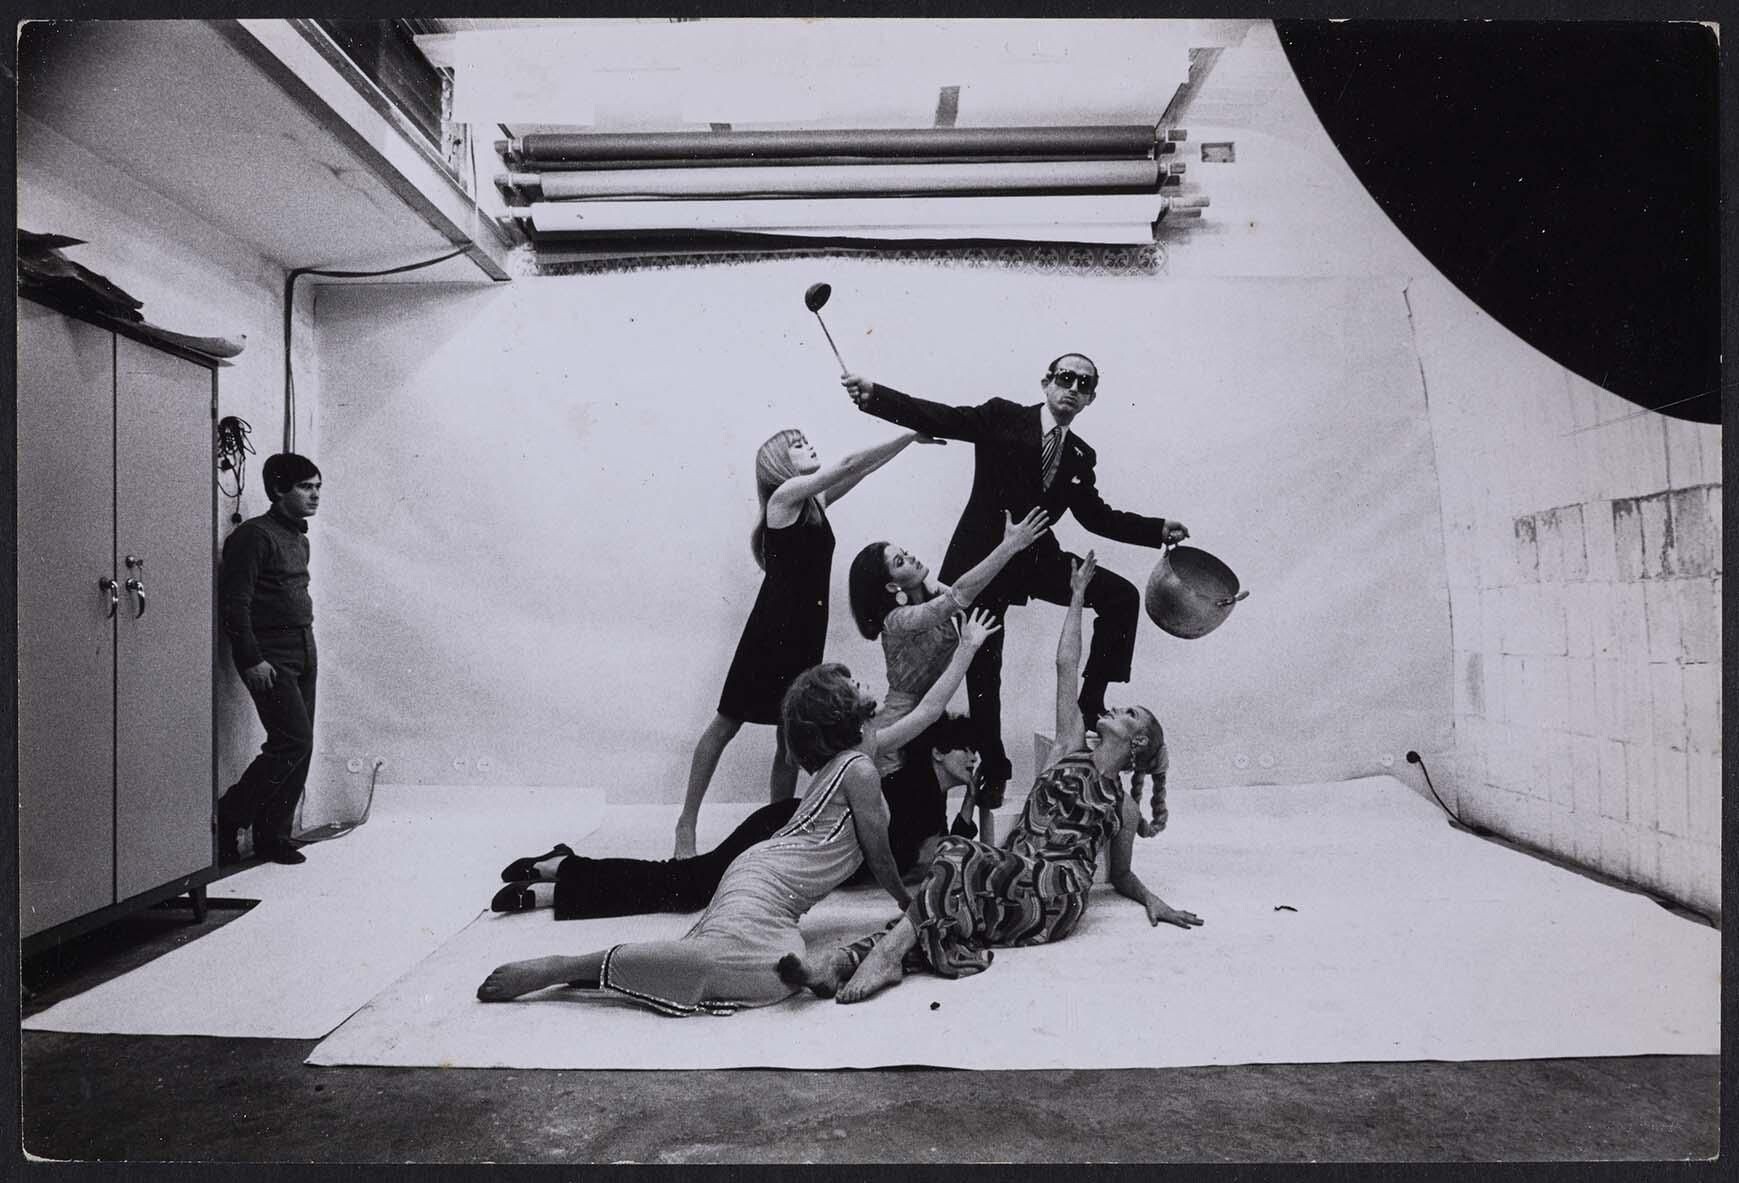 Ориоль с кастрюлей и половником среди девушек (для студийного агитплаката), 1968. Фотограф Ориоль Маспонс